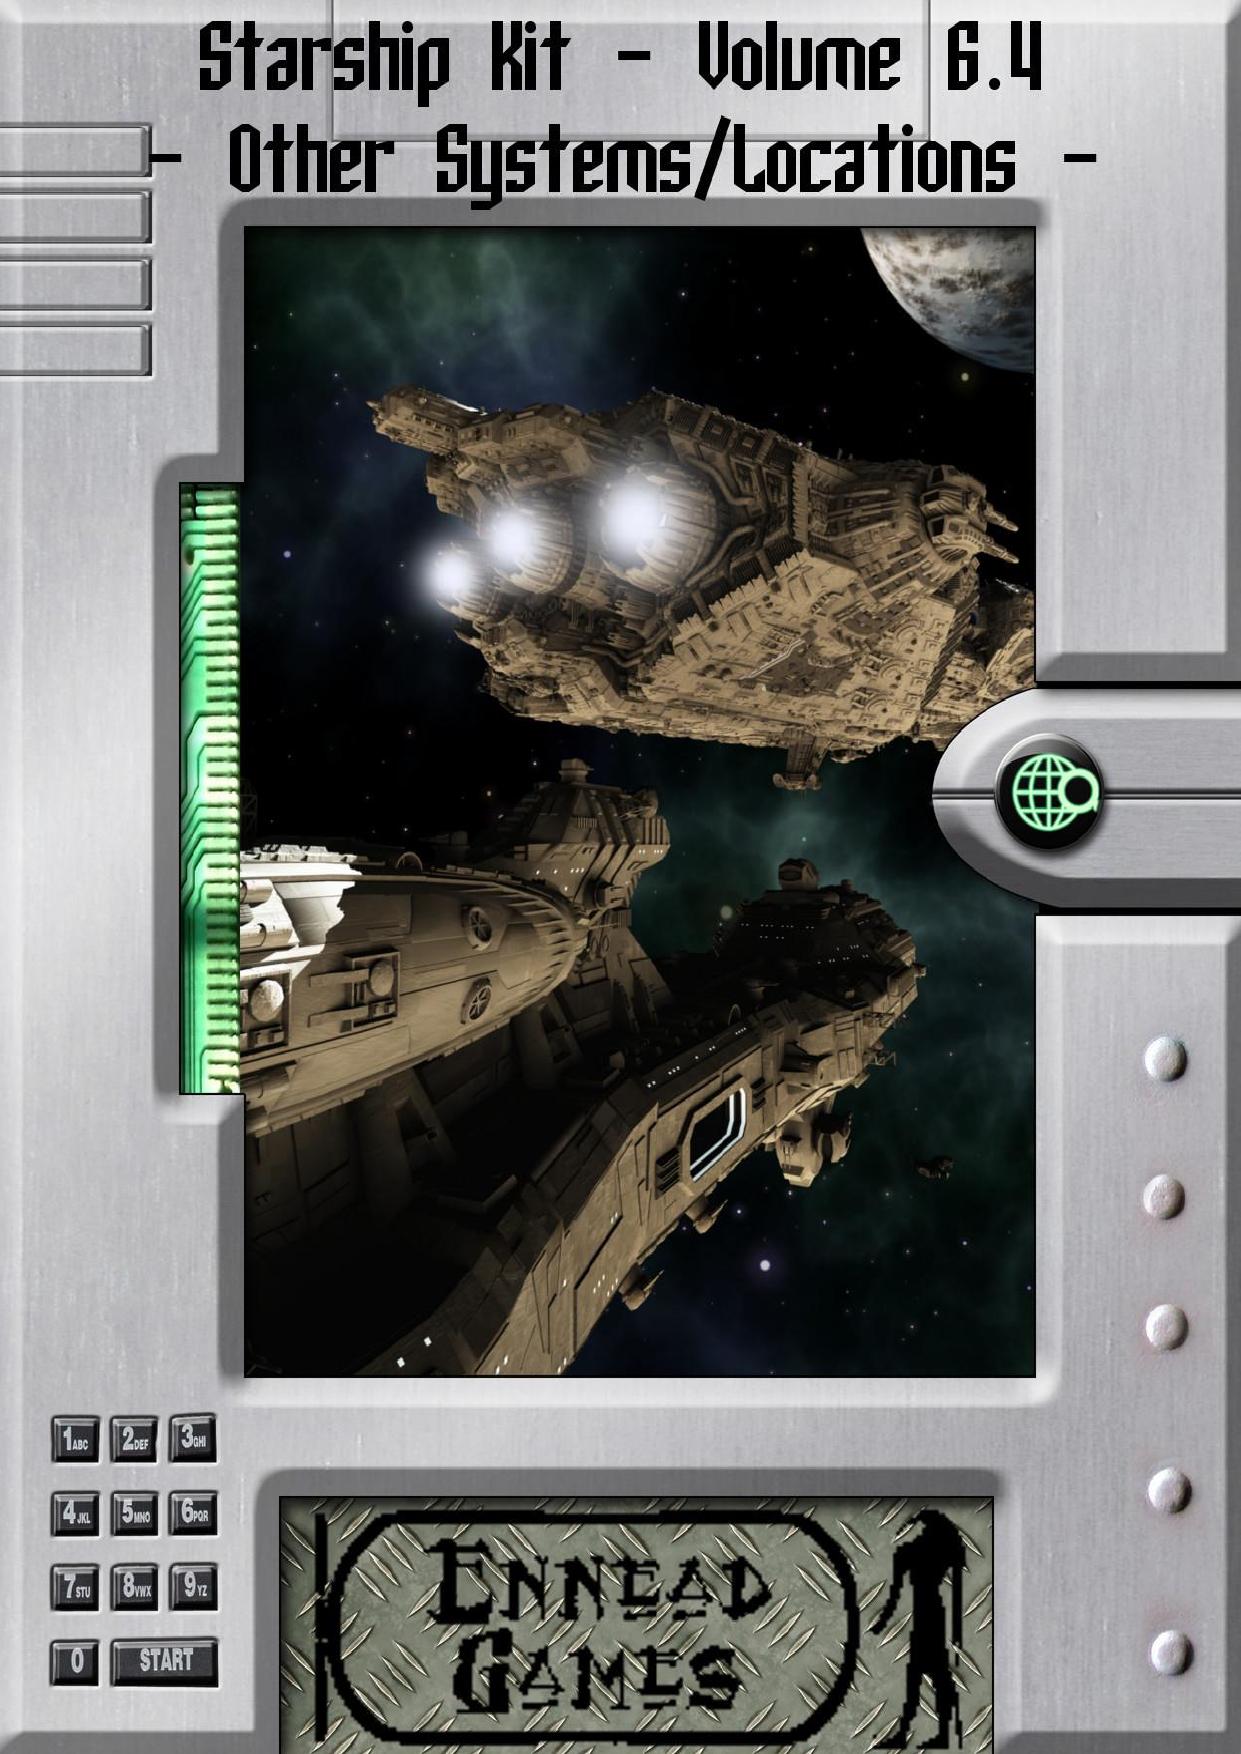 Ennead Games - Starship Kit - Volume 6.4